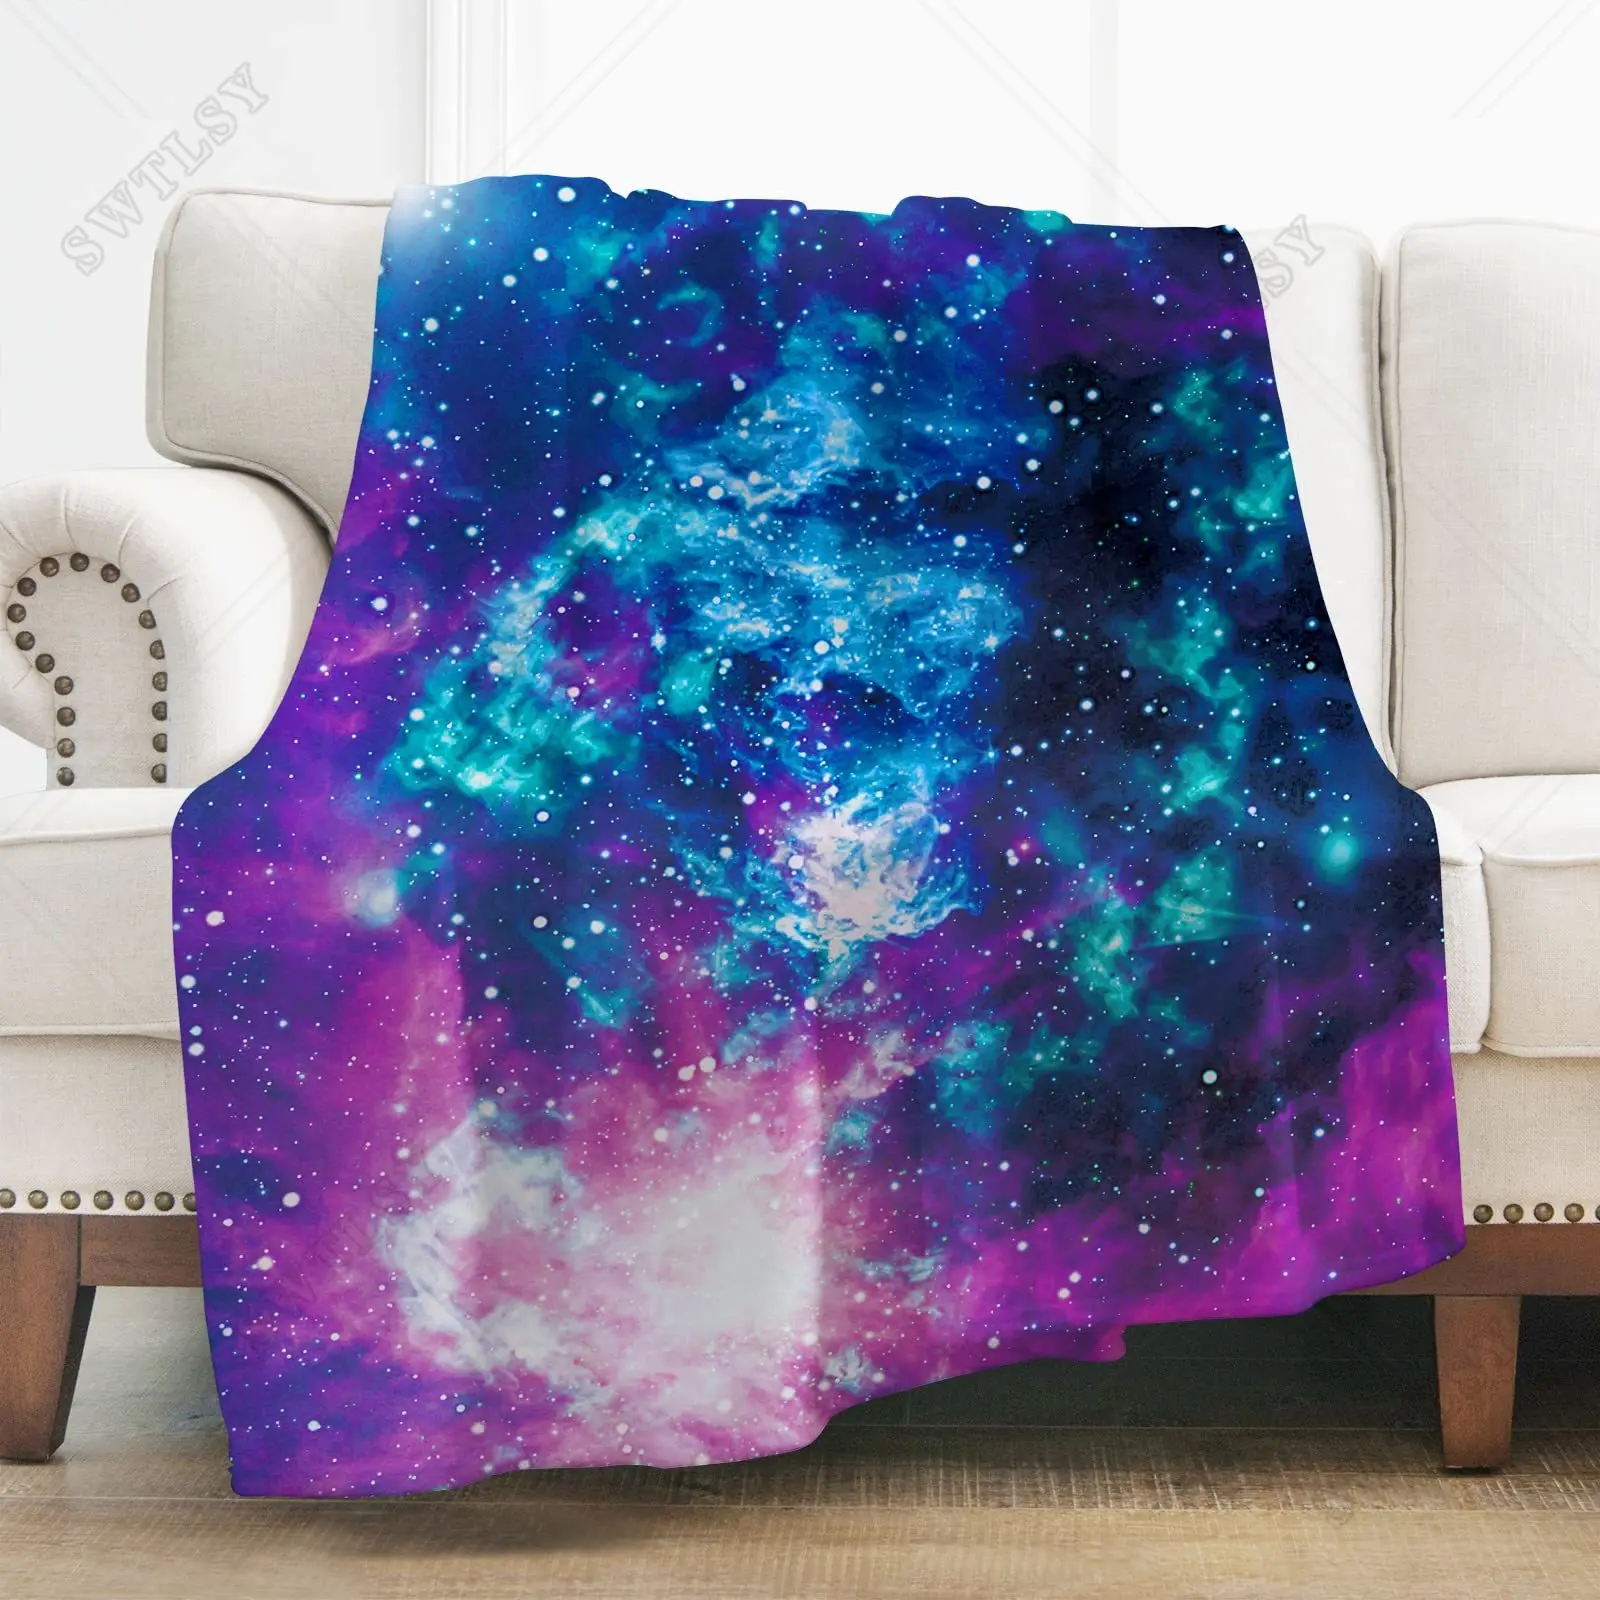 

Мягкое фланелевое одеяло для мальчиков и девочек, супермягкое теплое одеяло синего и фиолетового цветов с изображением космоса, звезд, королевы, легкое покрывало